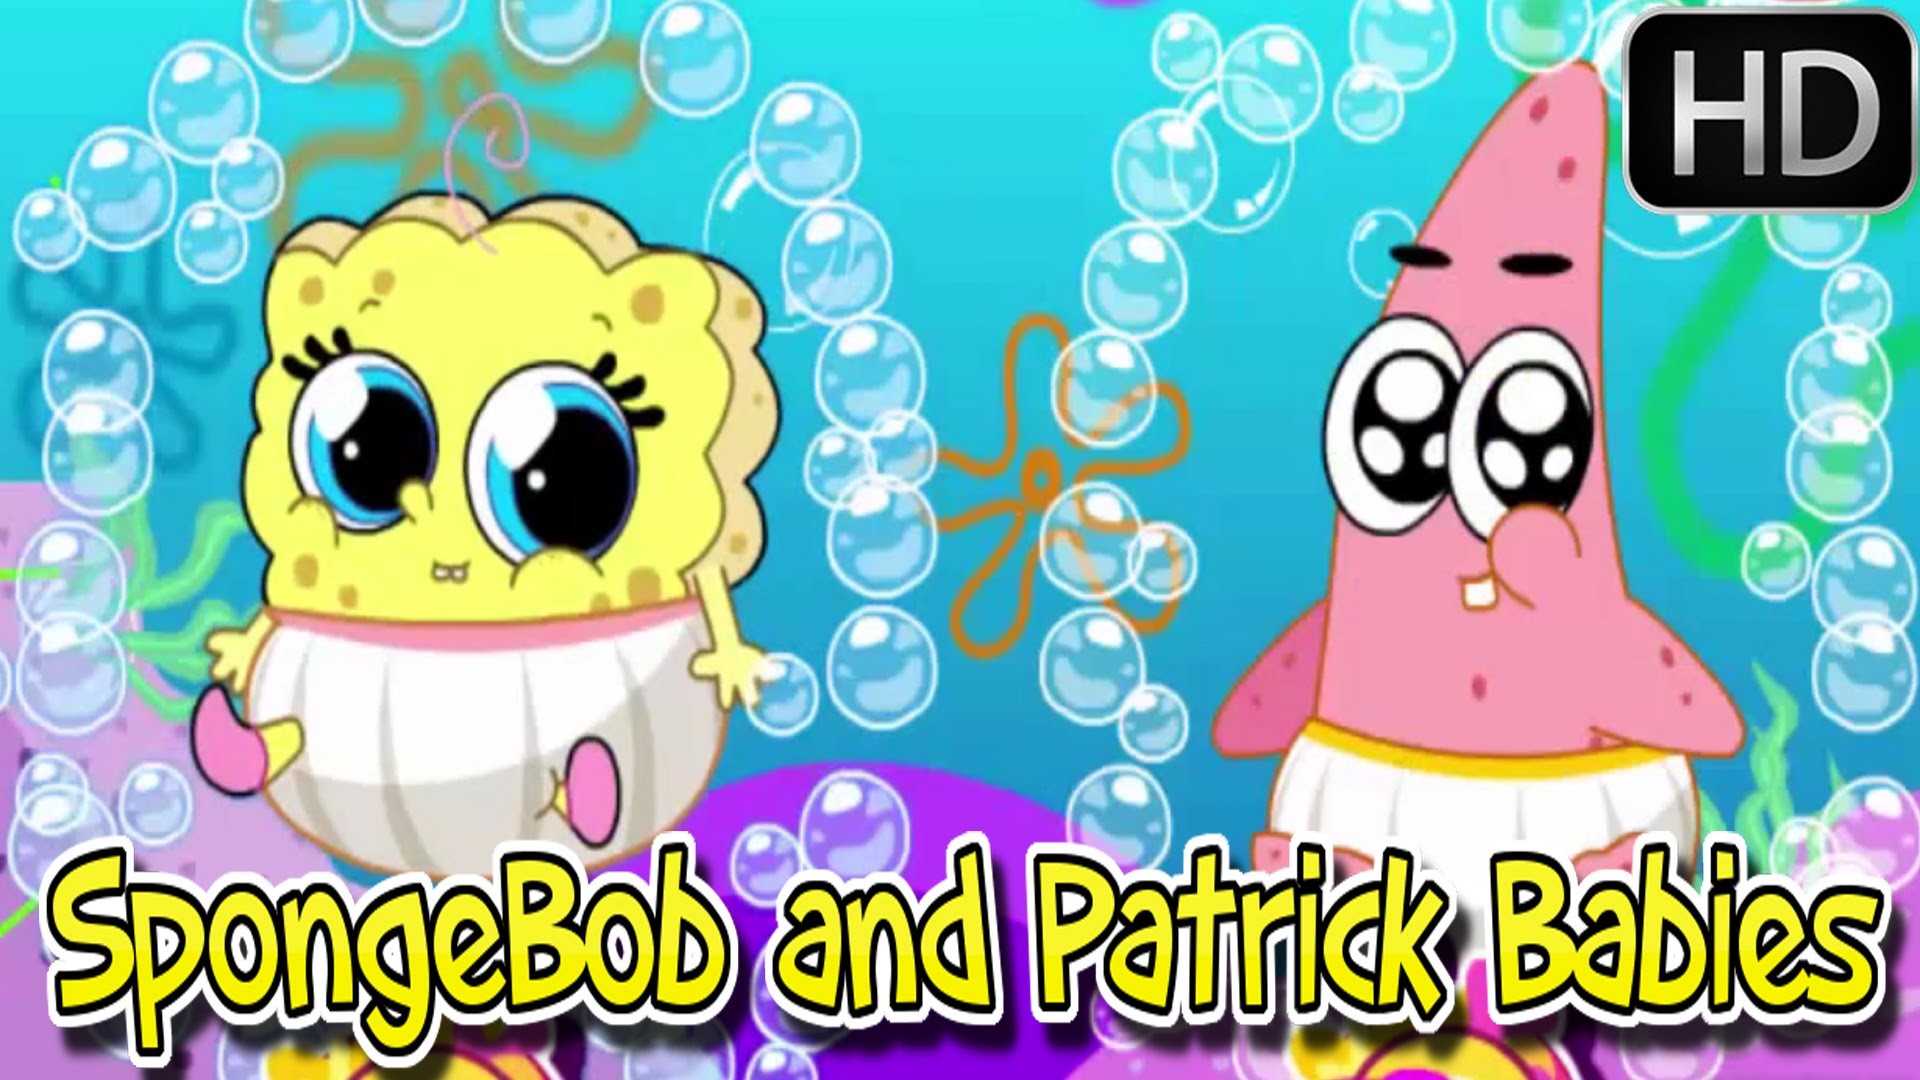 1920x1080 á´´á´° â¥â¥â¥ Spongebob games - Spongebob And Patrick Babies - Baby videos games  for kids - YouTube